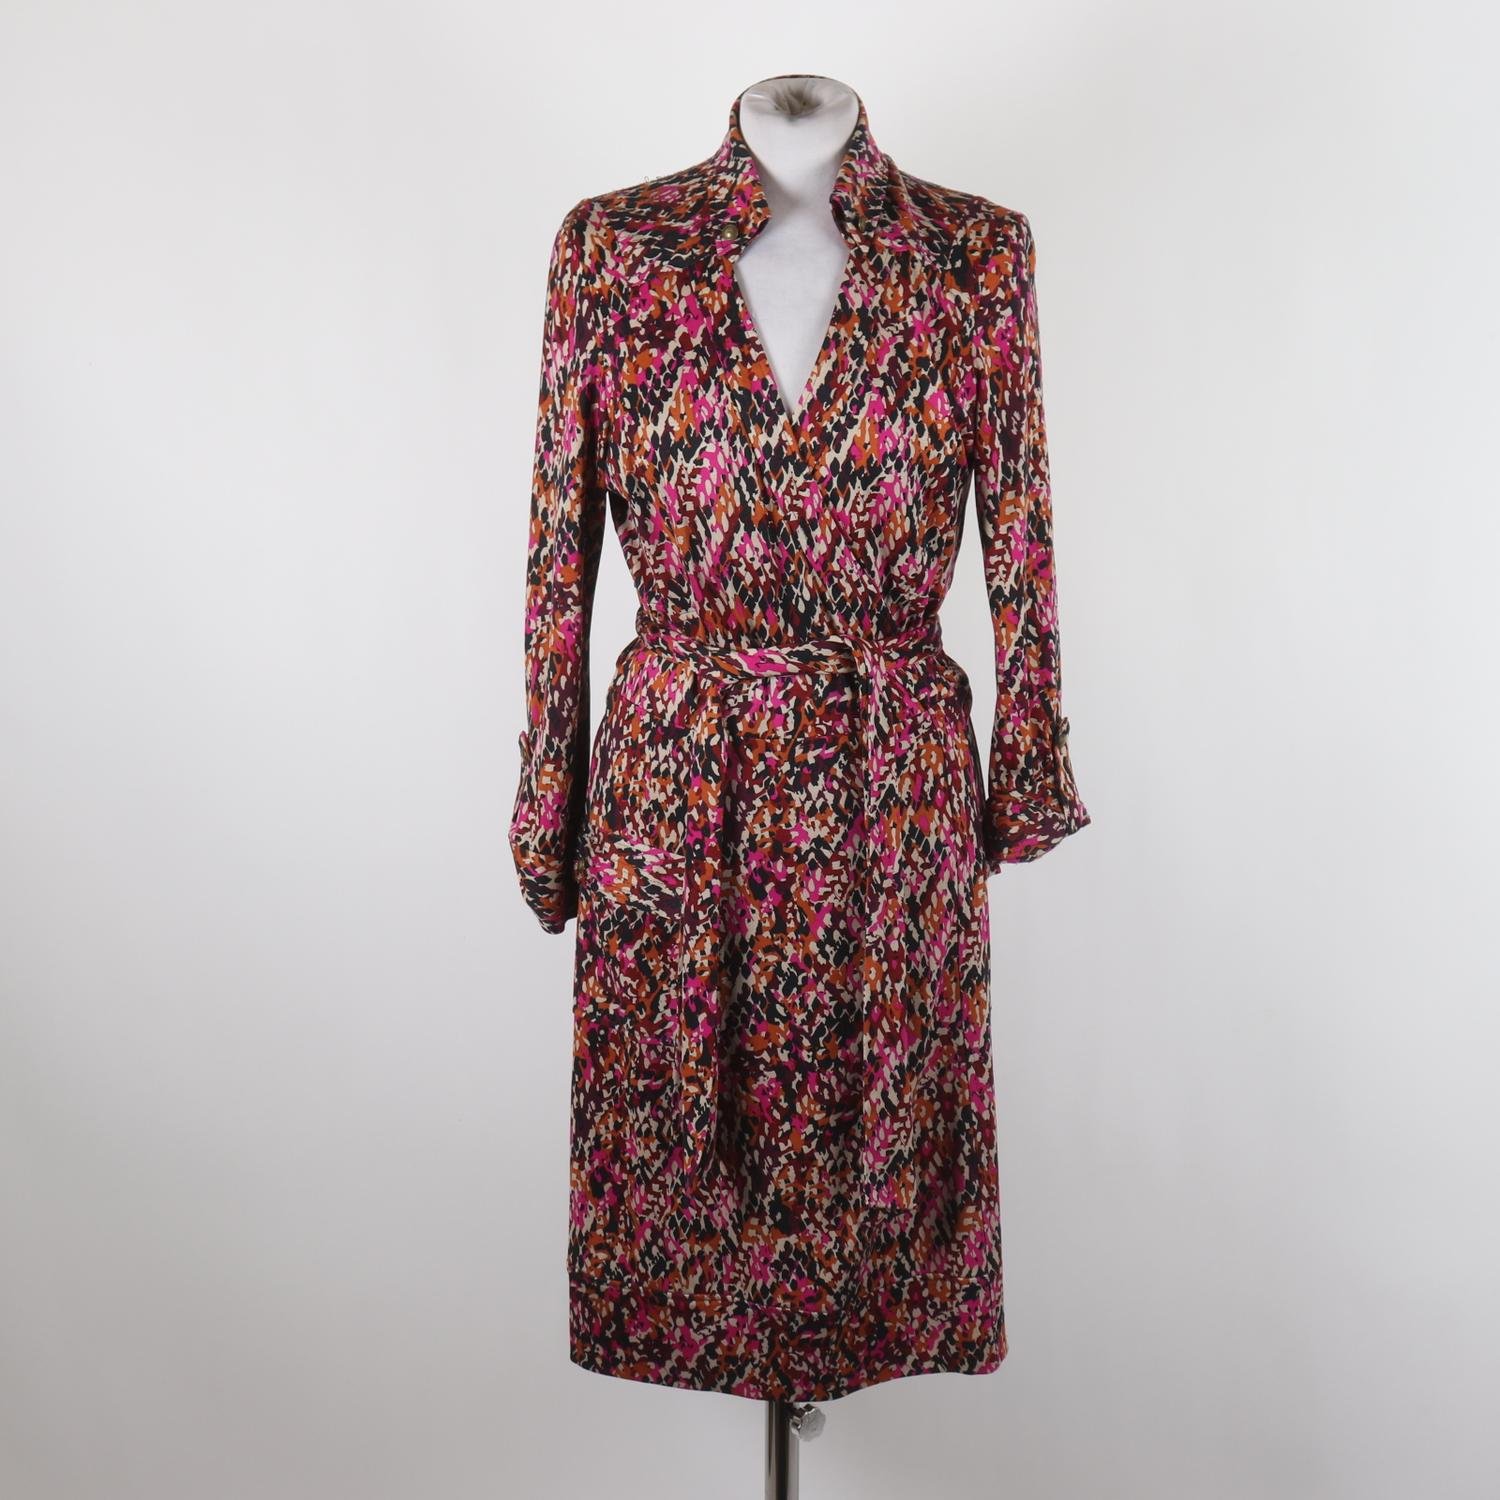 Klänning, Diane von Furstenberg, mönsstrad, 100% silke, stl. M